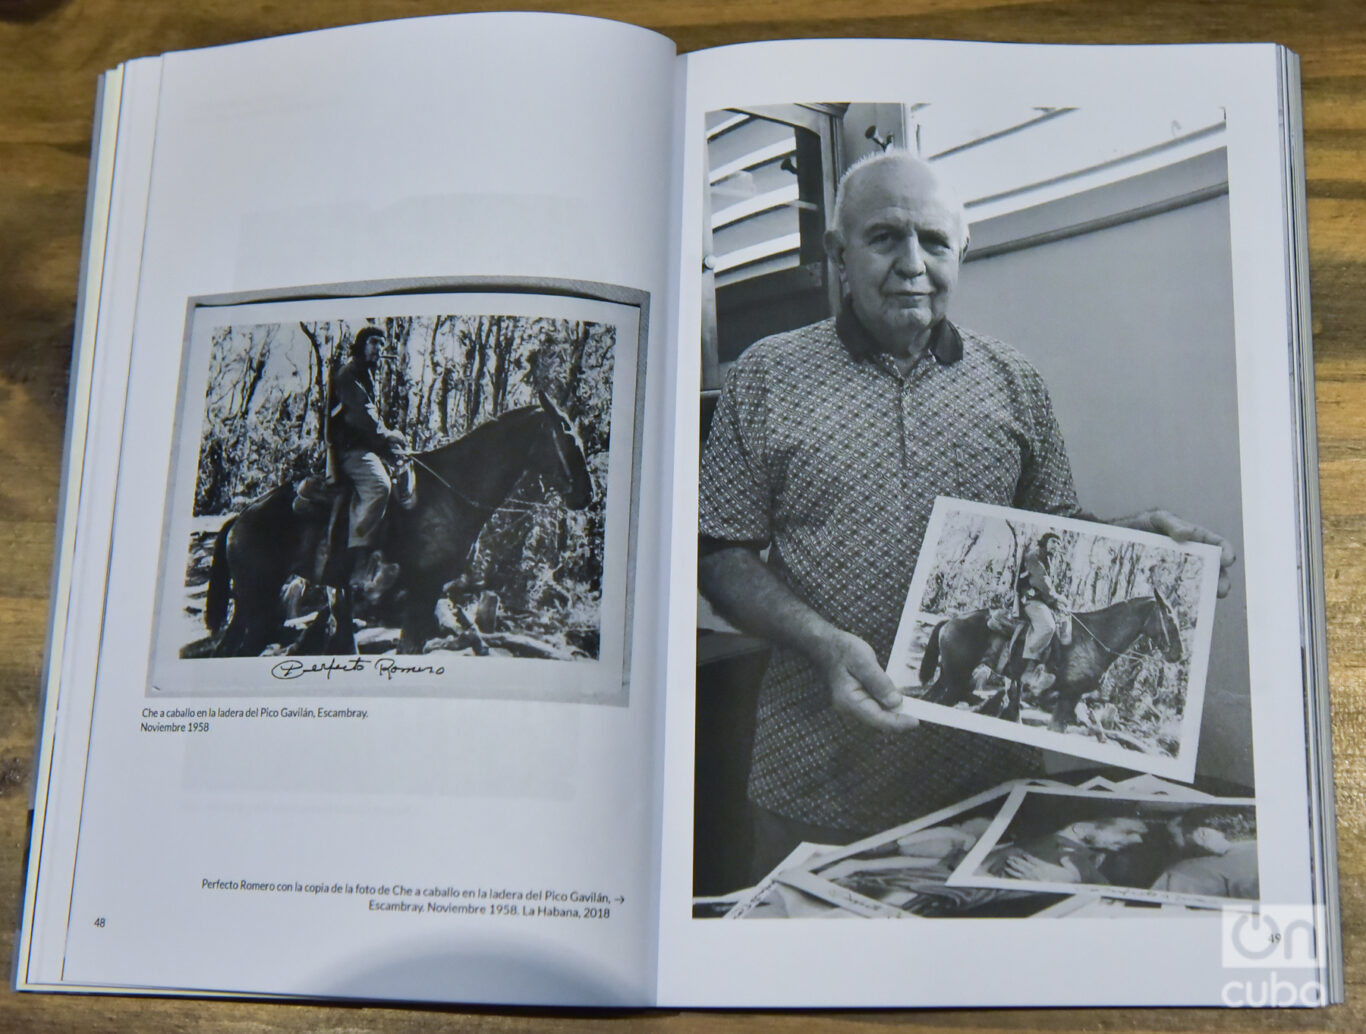 La foto y el fotógrafo entre las páginas del libro reseñado. Foto: Kaloian.